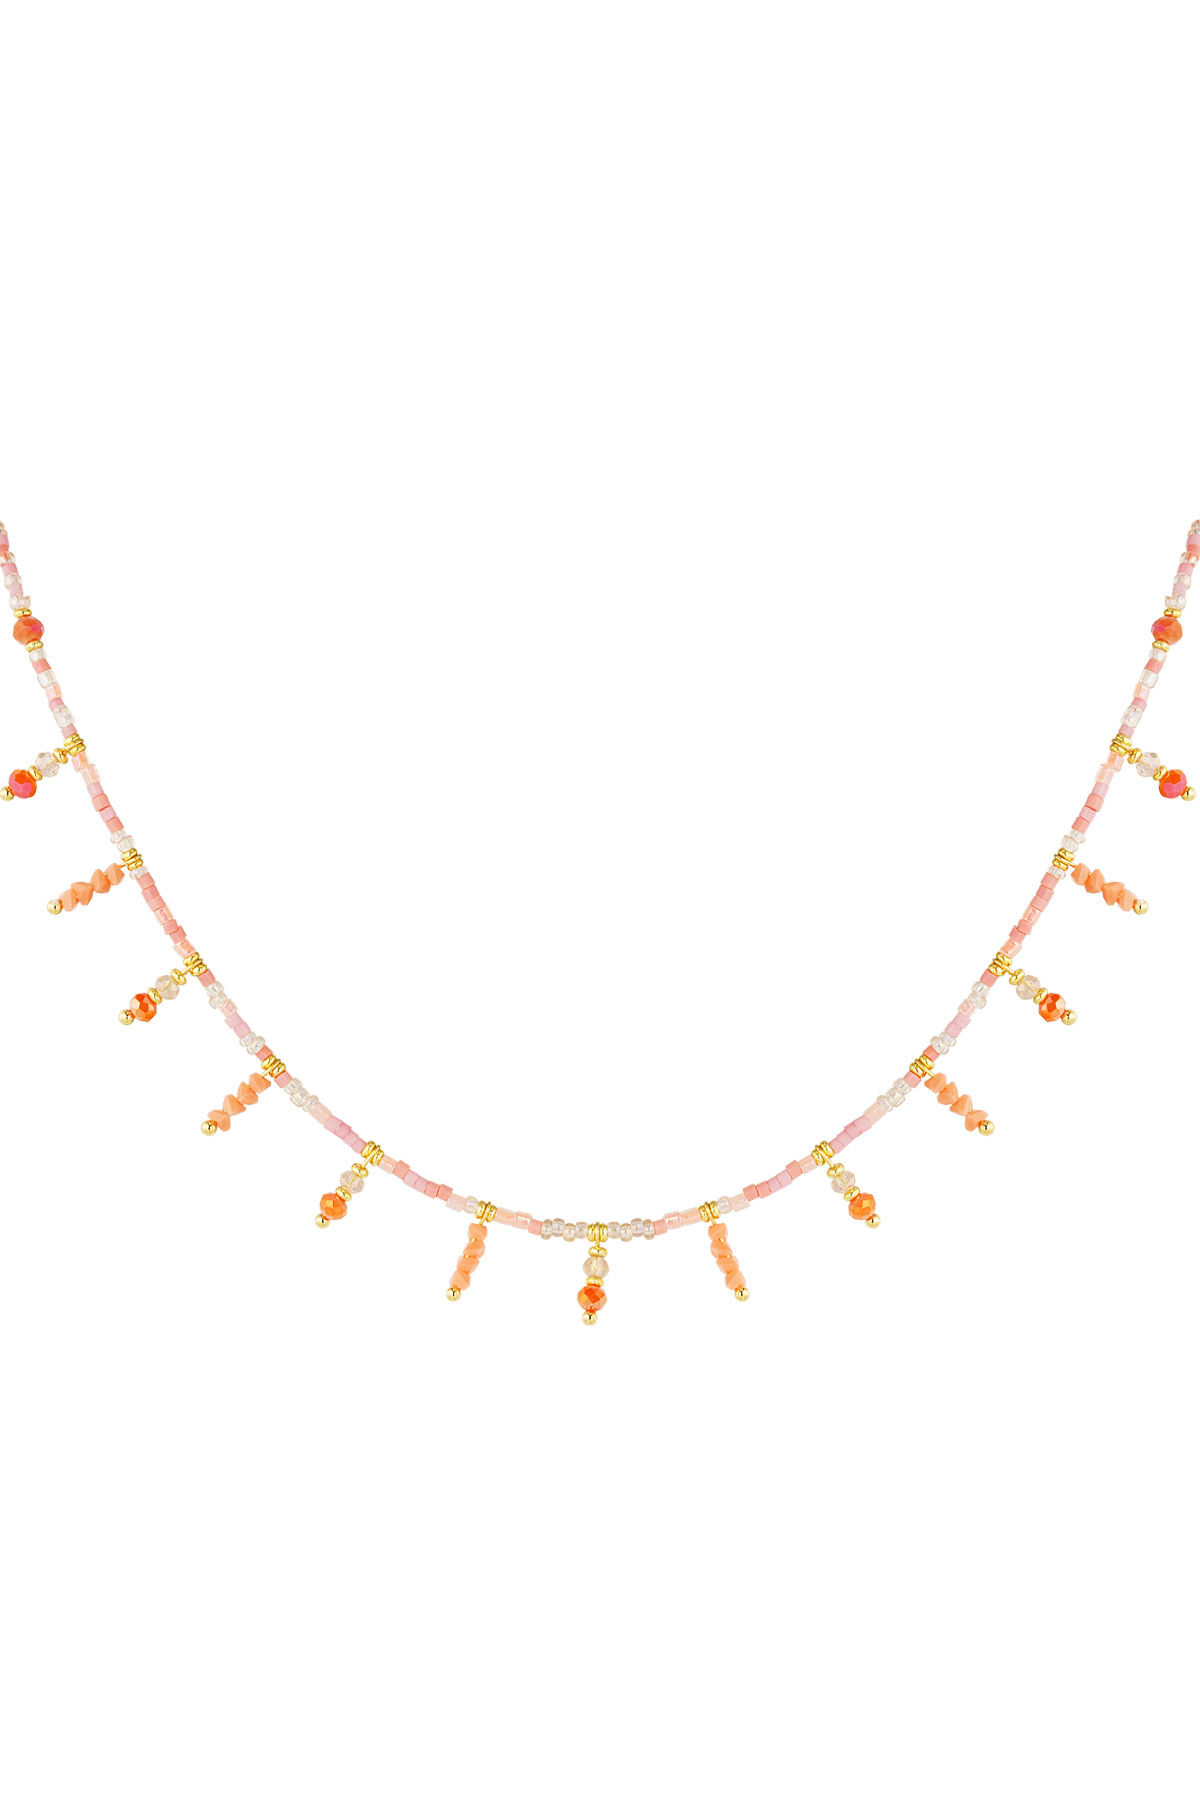 Halskette Summer Sparkle - Orangegold